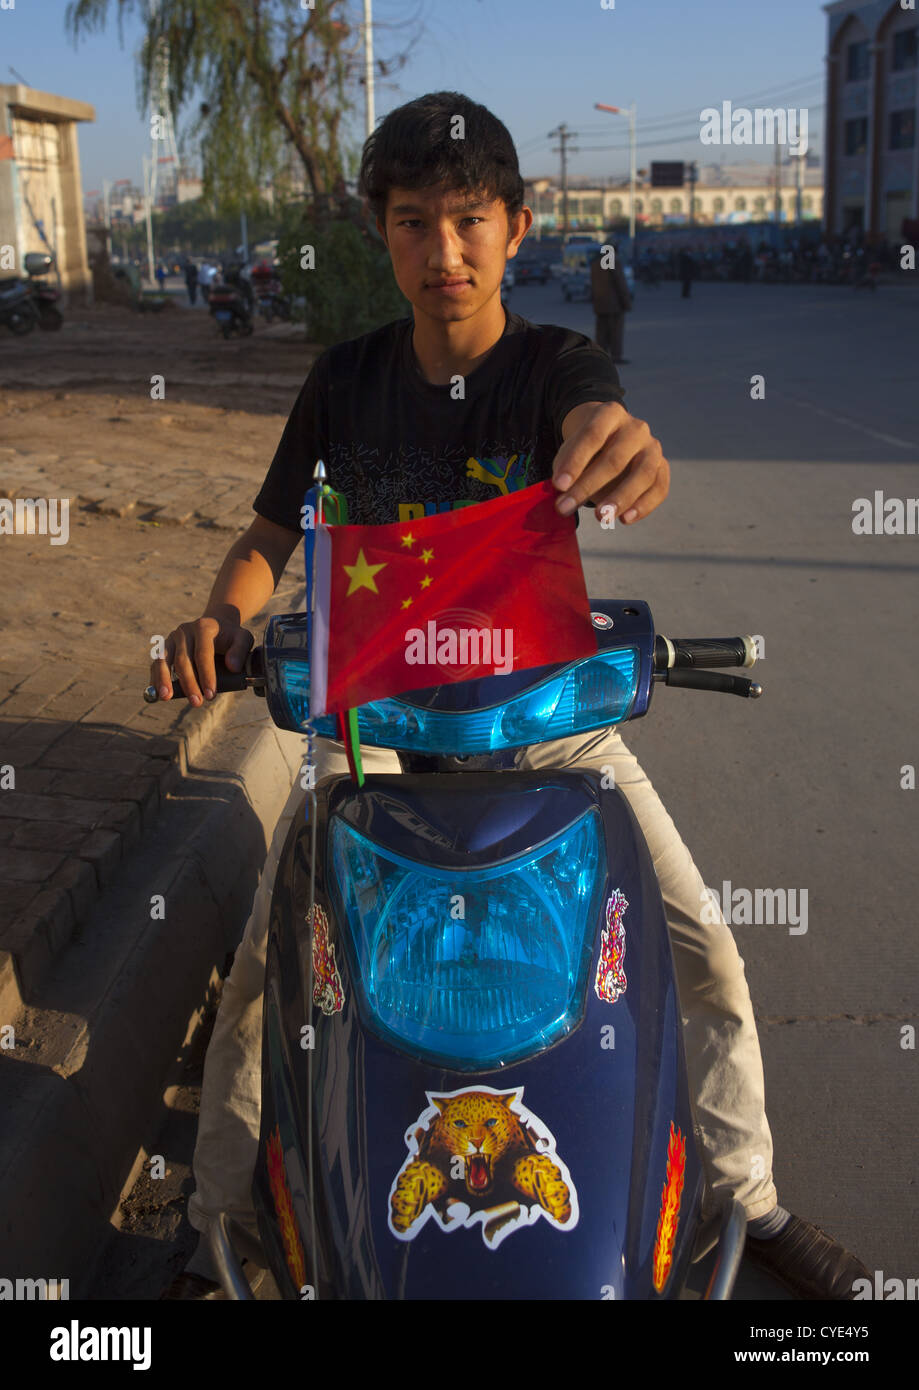 Uyghur Garçon montrant un drapeau chinois, Kashgar, la région autonome ouïghoure du Xinjiang, Chine Banque D'Images